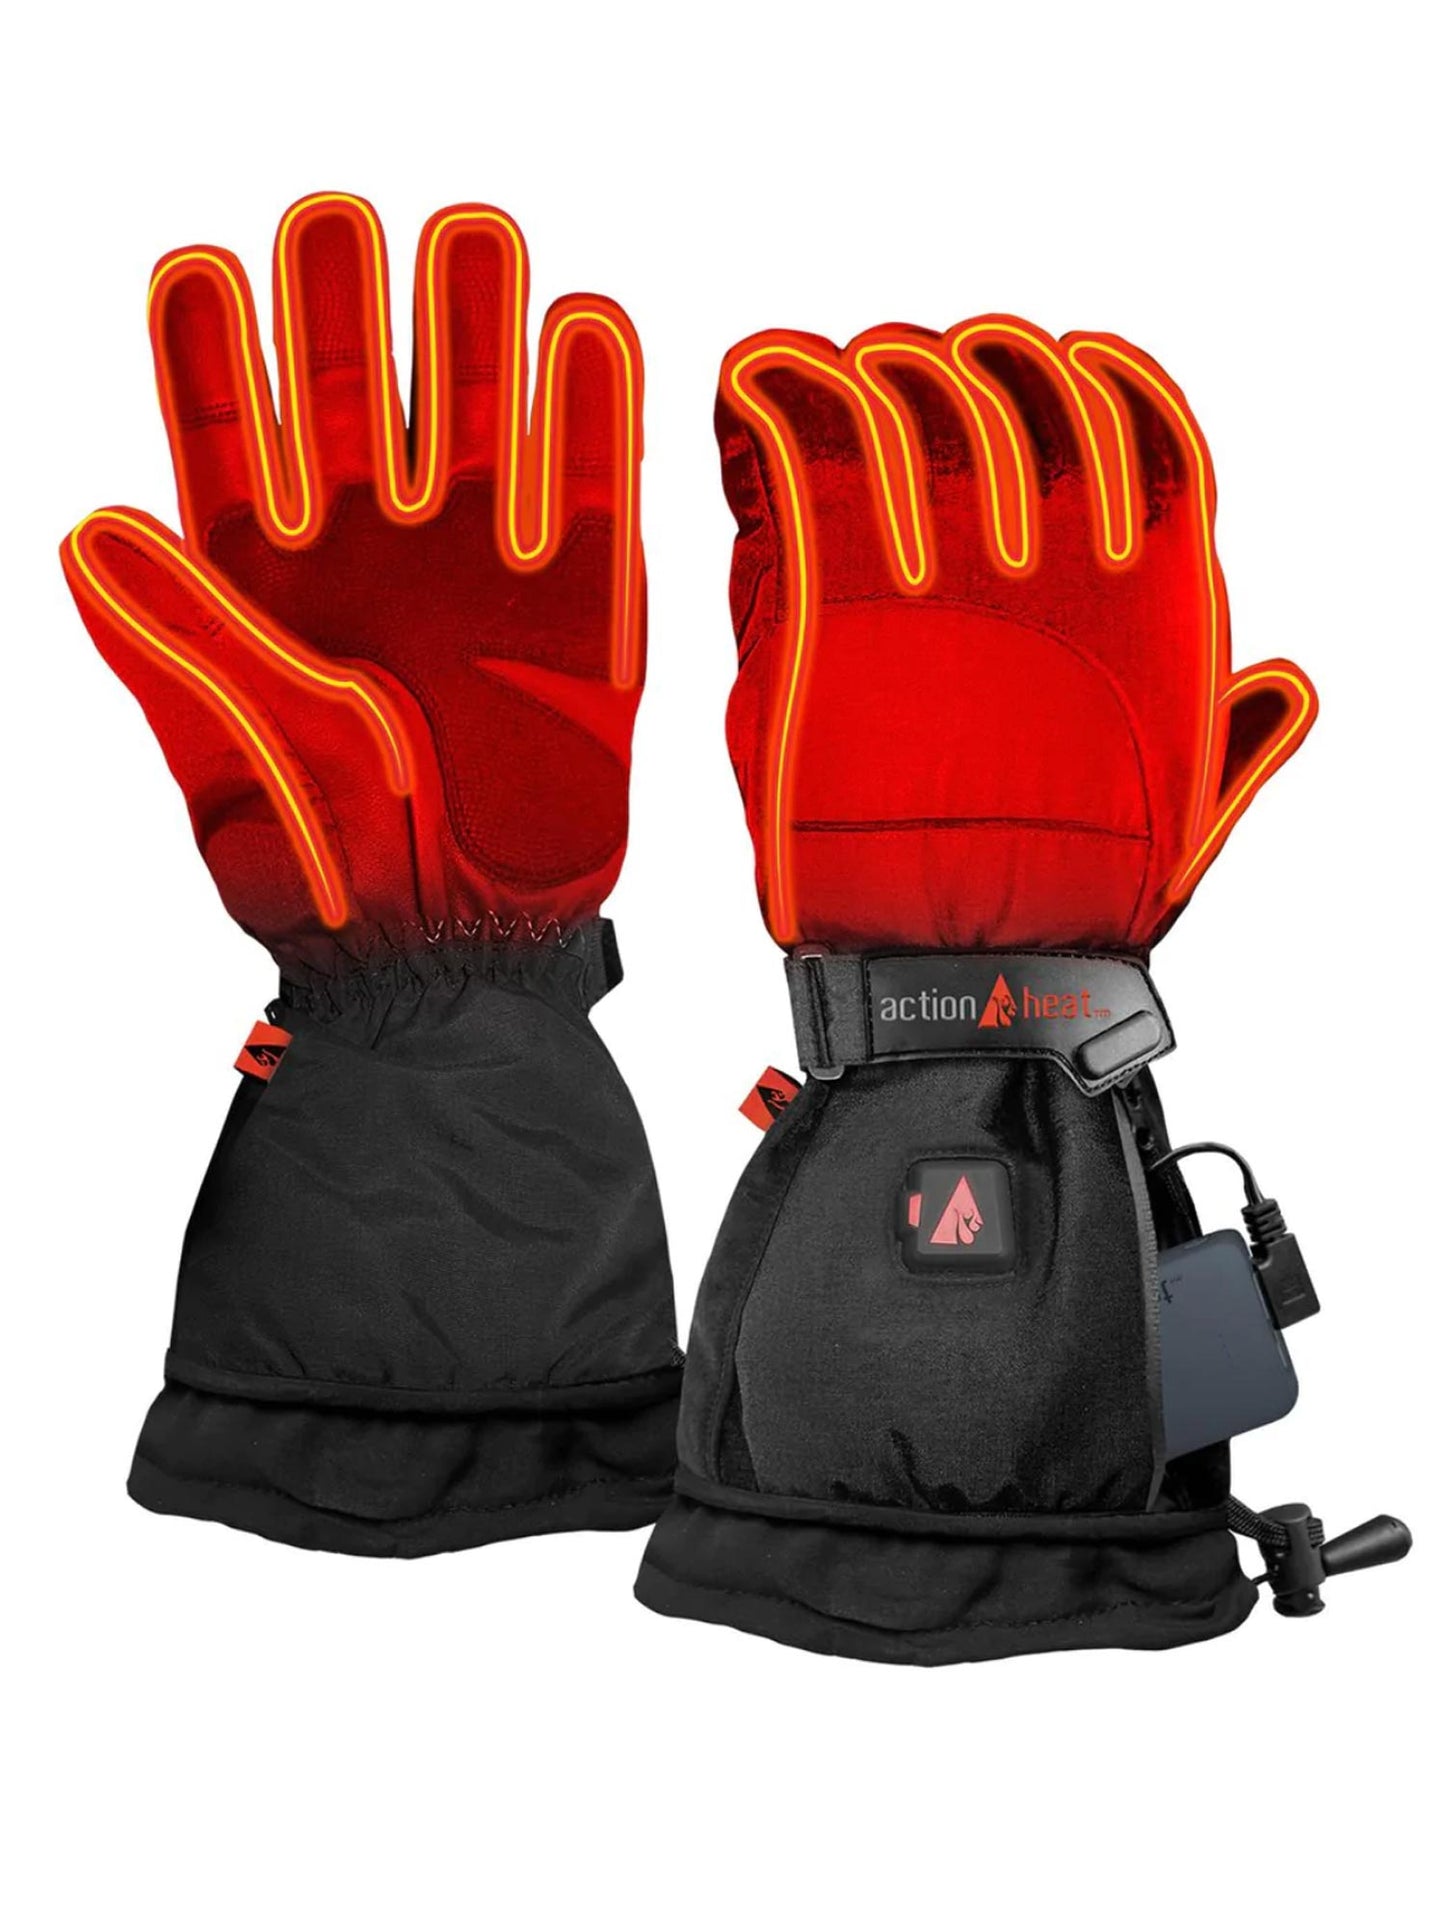 women's Action Heat heated gloves